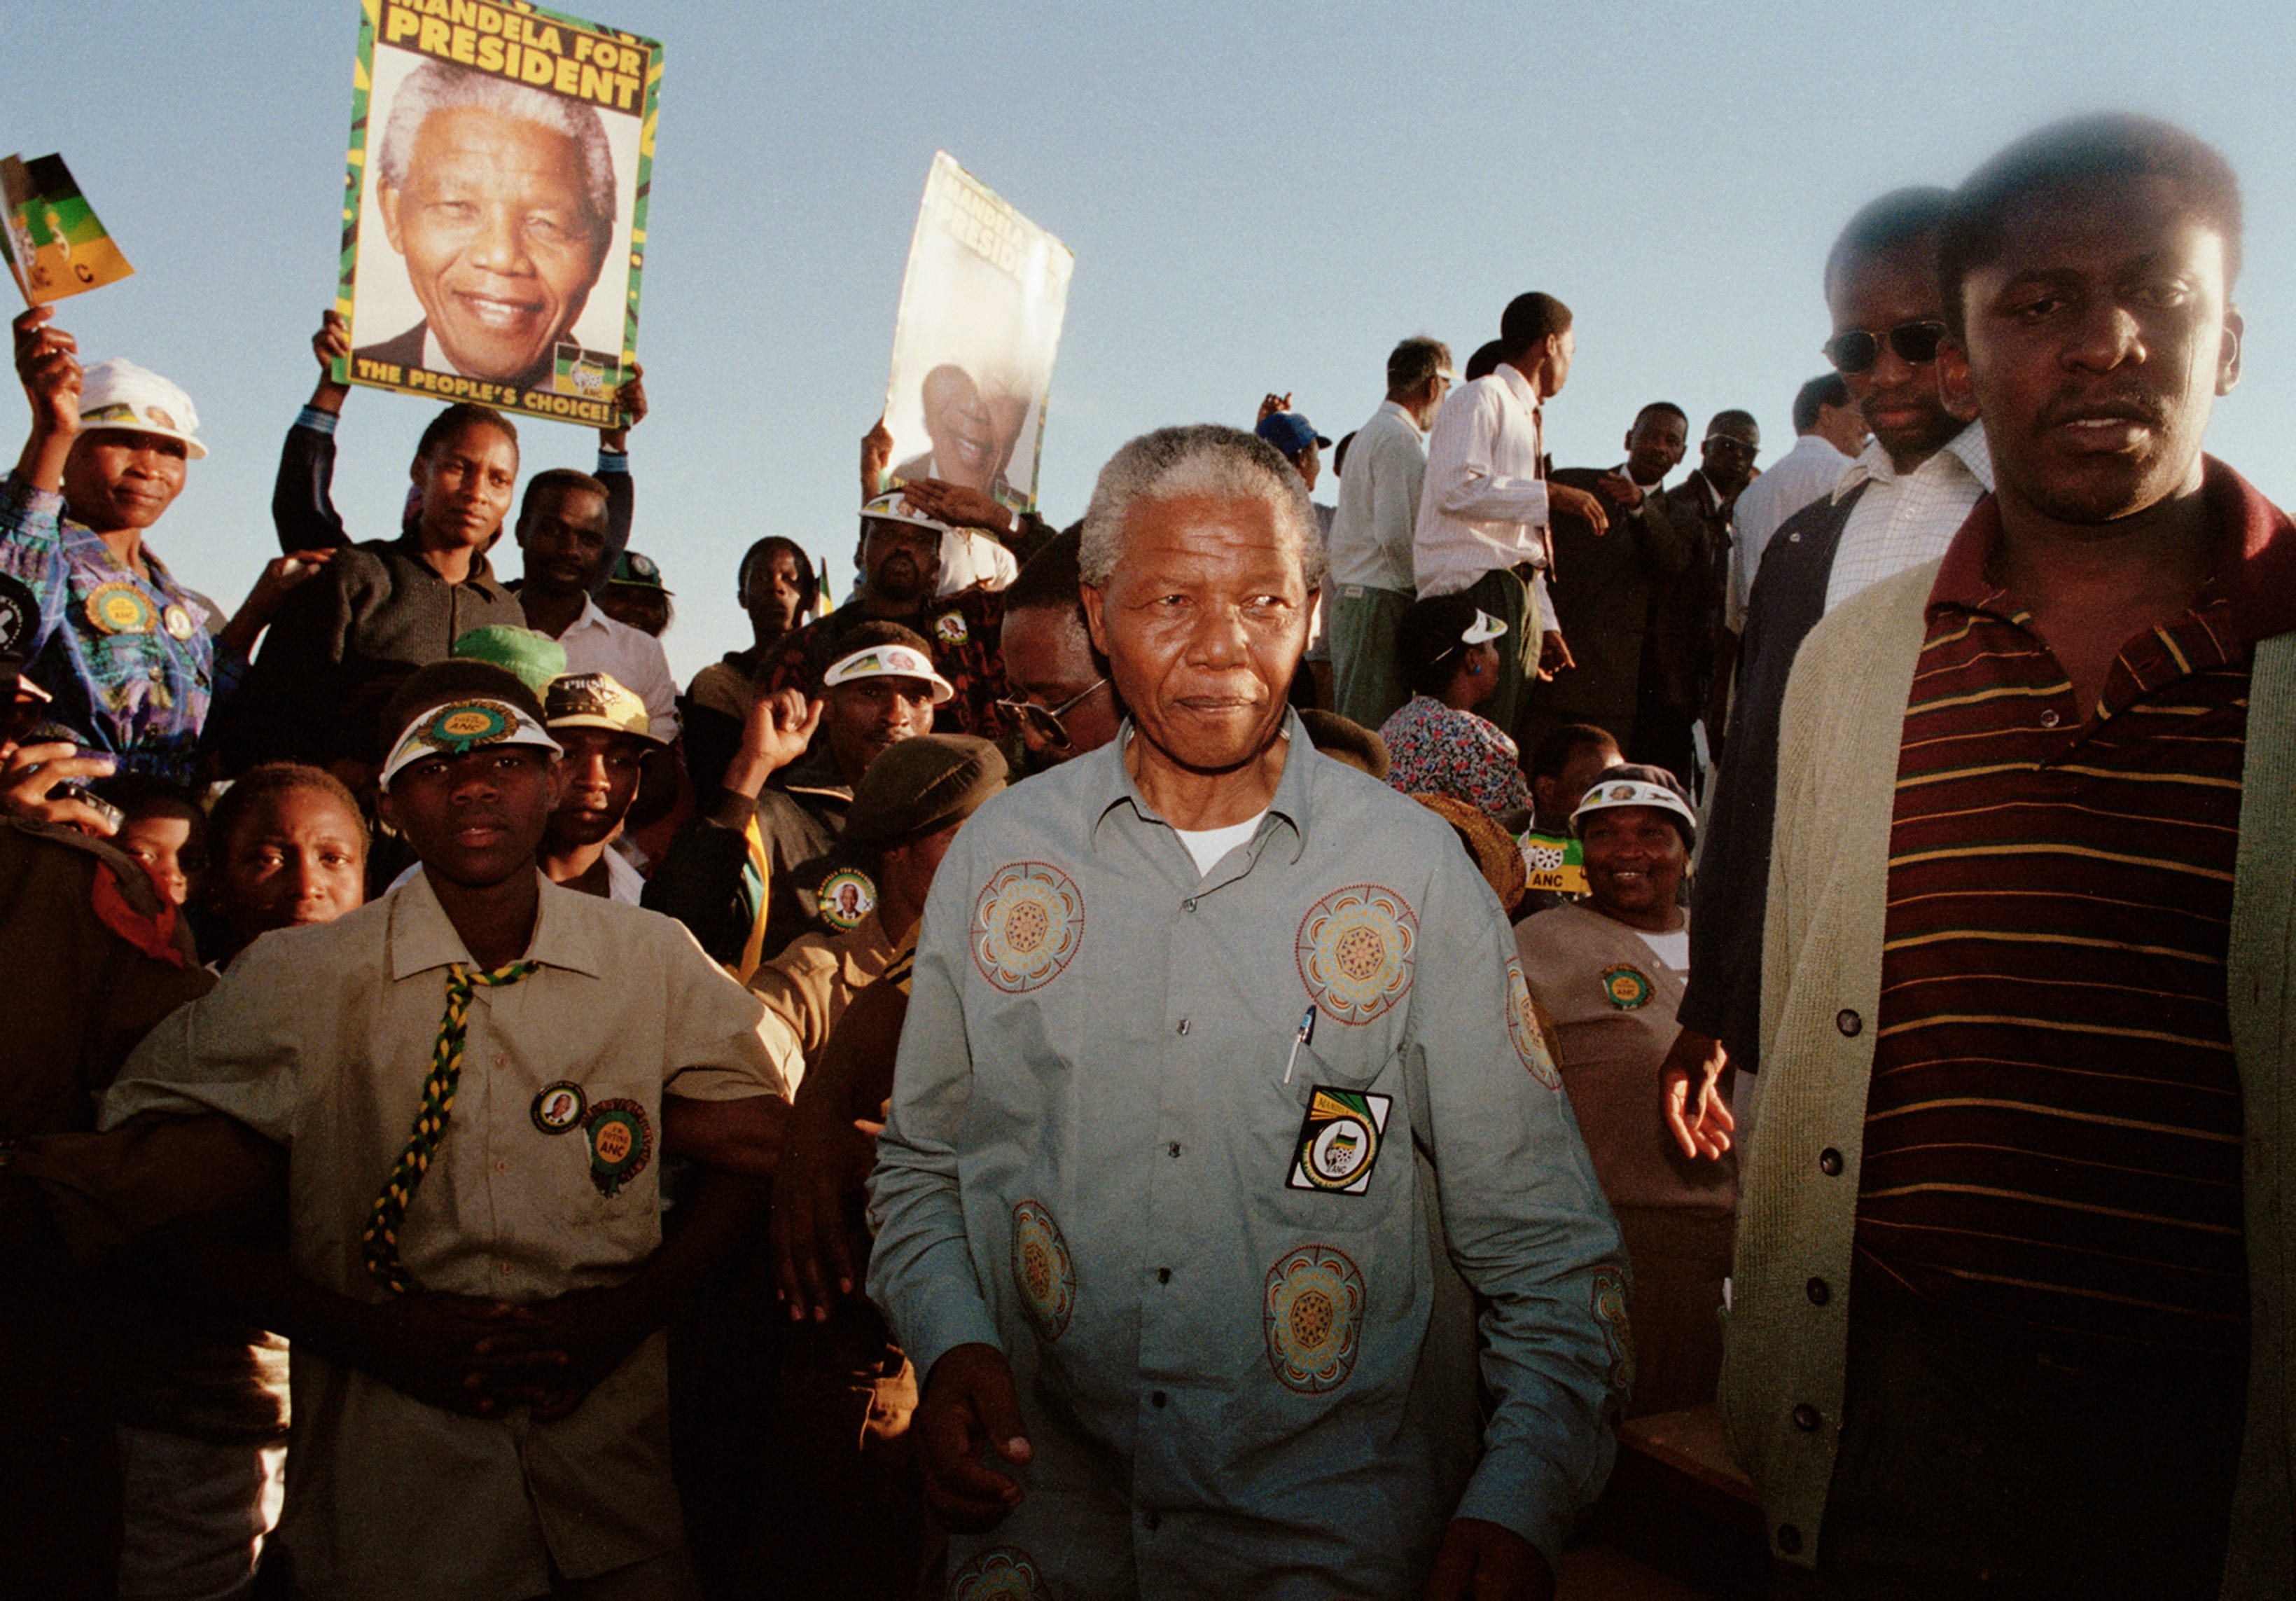 ANC-Führer Nelson Mandela im Wahlkampf während der ersten demokratischen Wahlen in Südafrika am 16. April 1994 in Ladysmith, Kwazulu Natal, Südafrika.